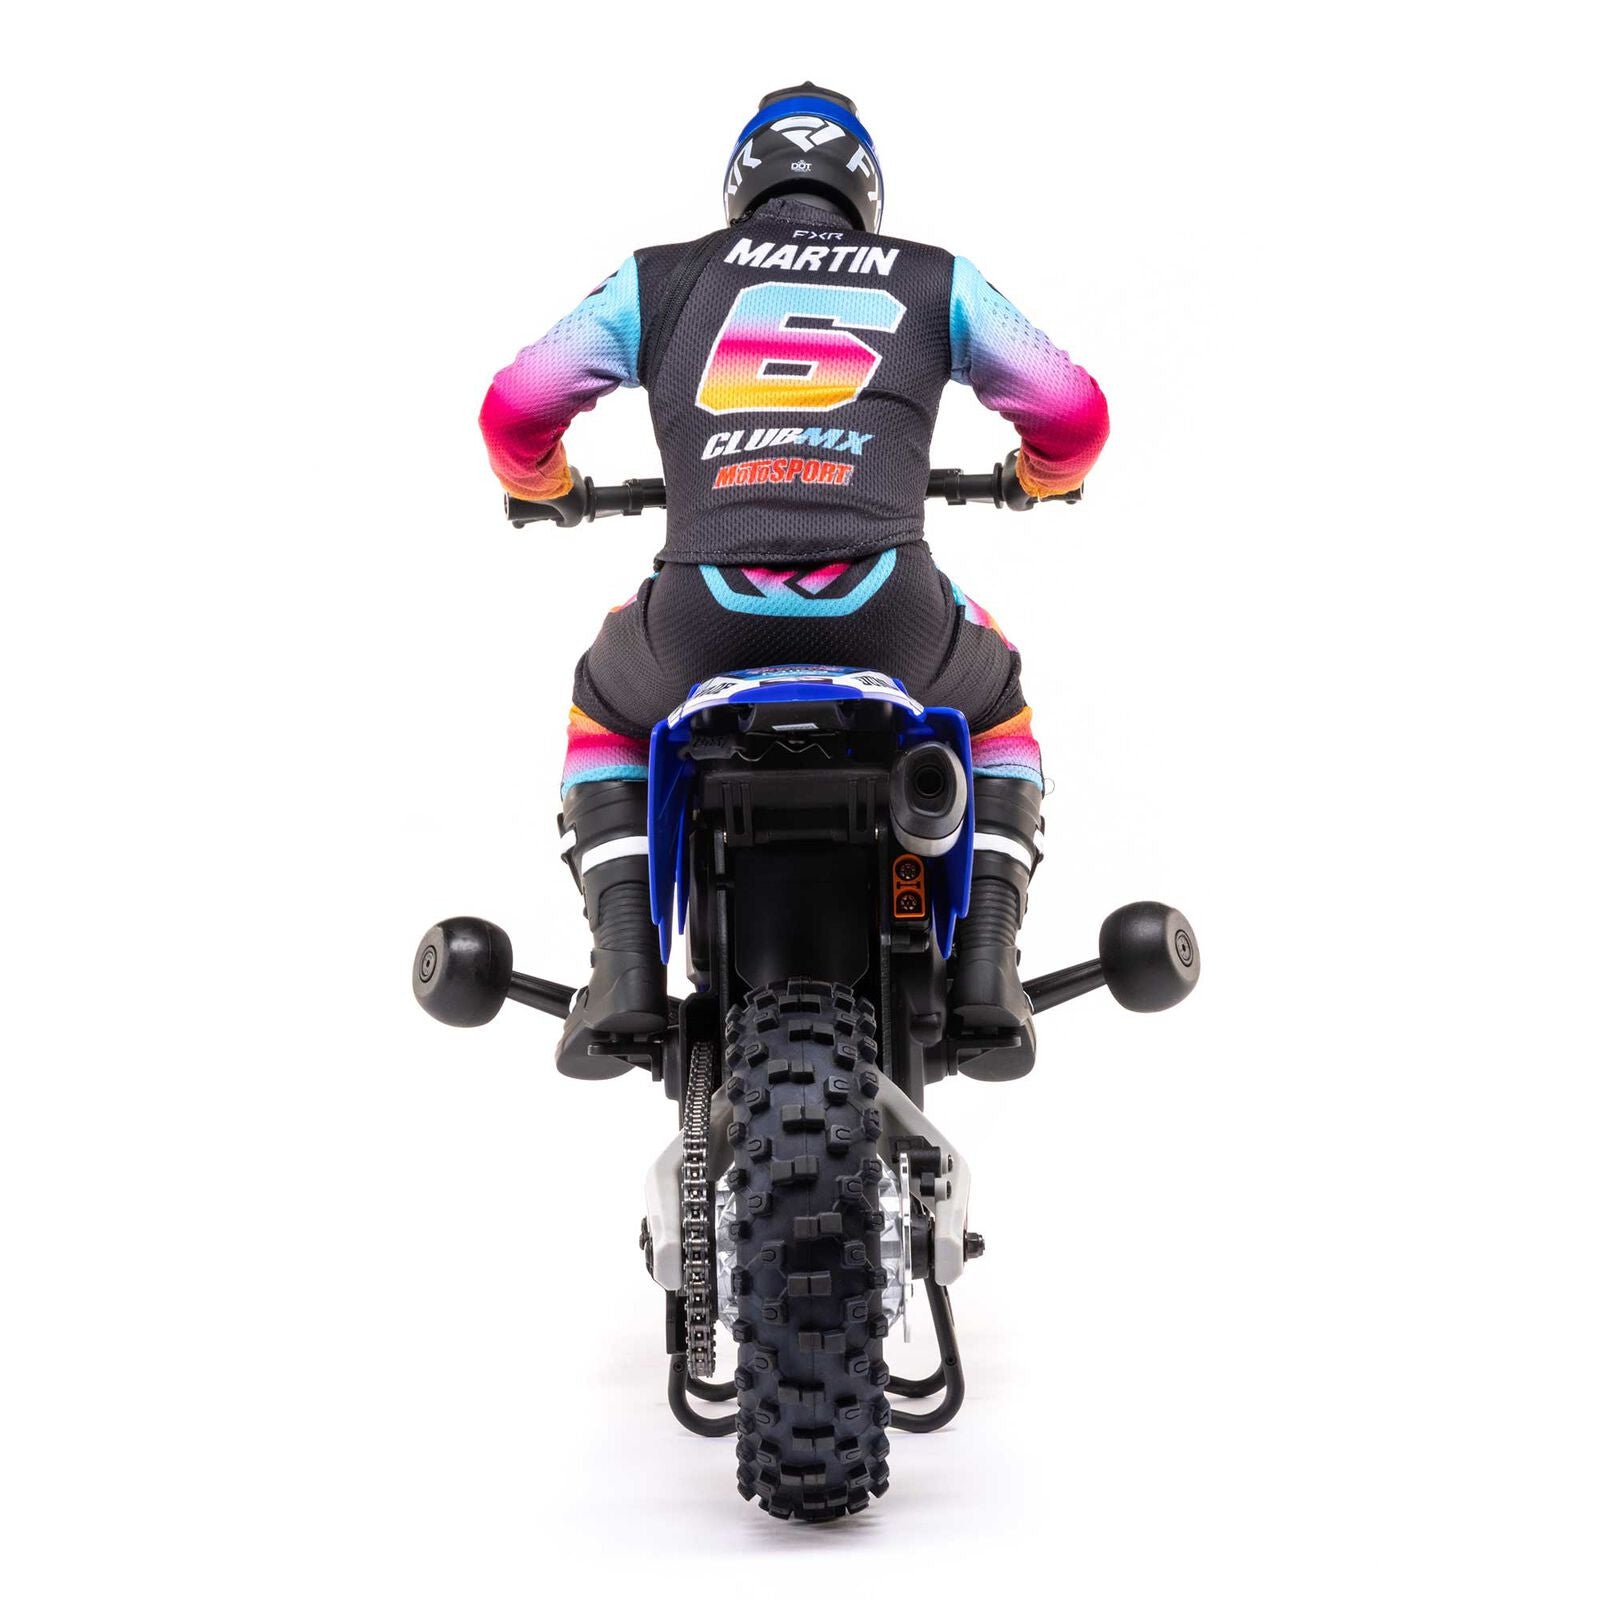 Losi Moto Promoto-MX Motorcycle RTR 1/4 LOS06000